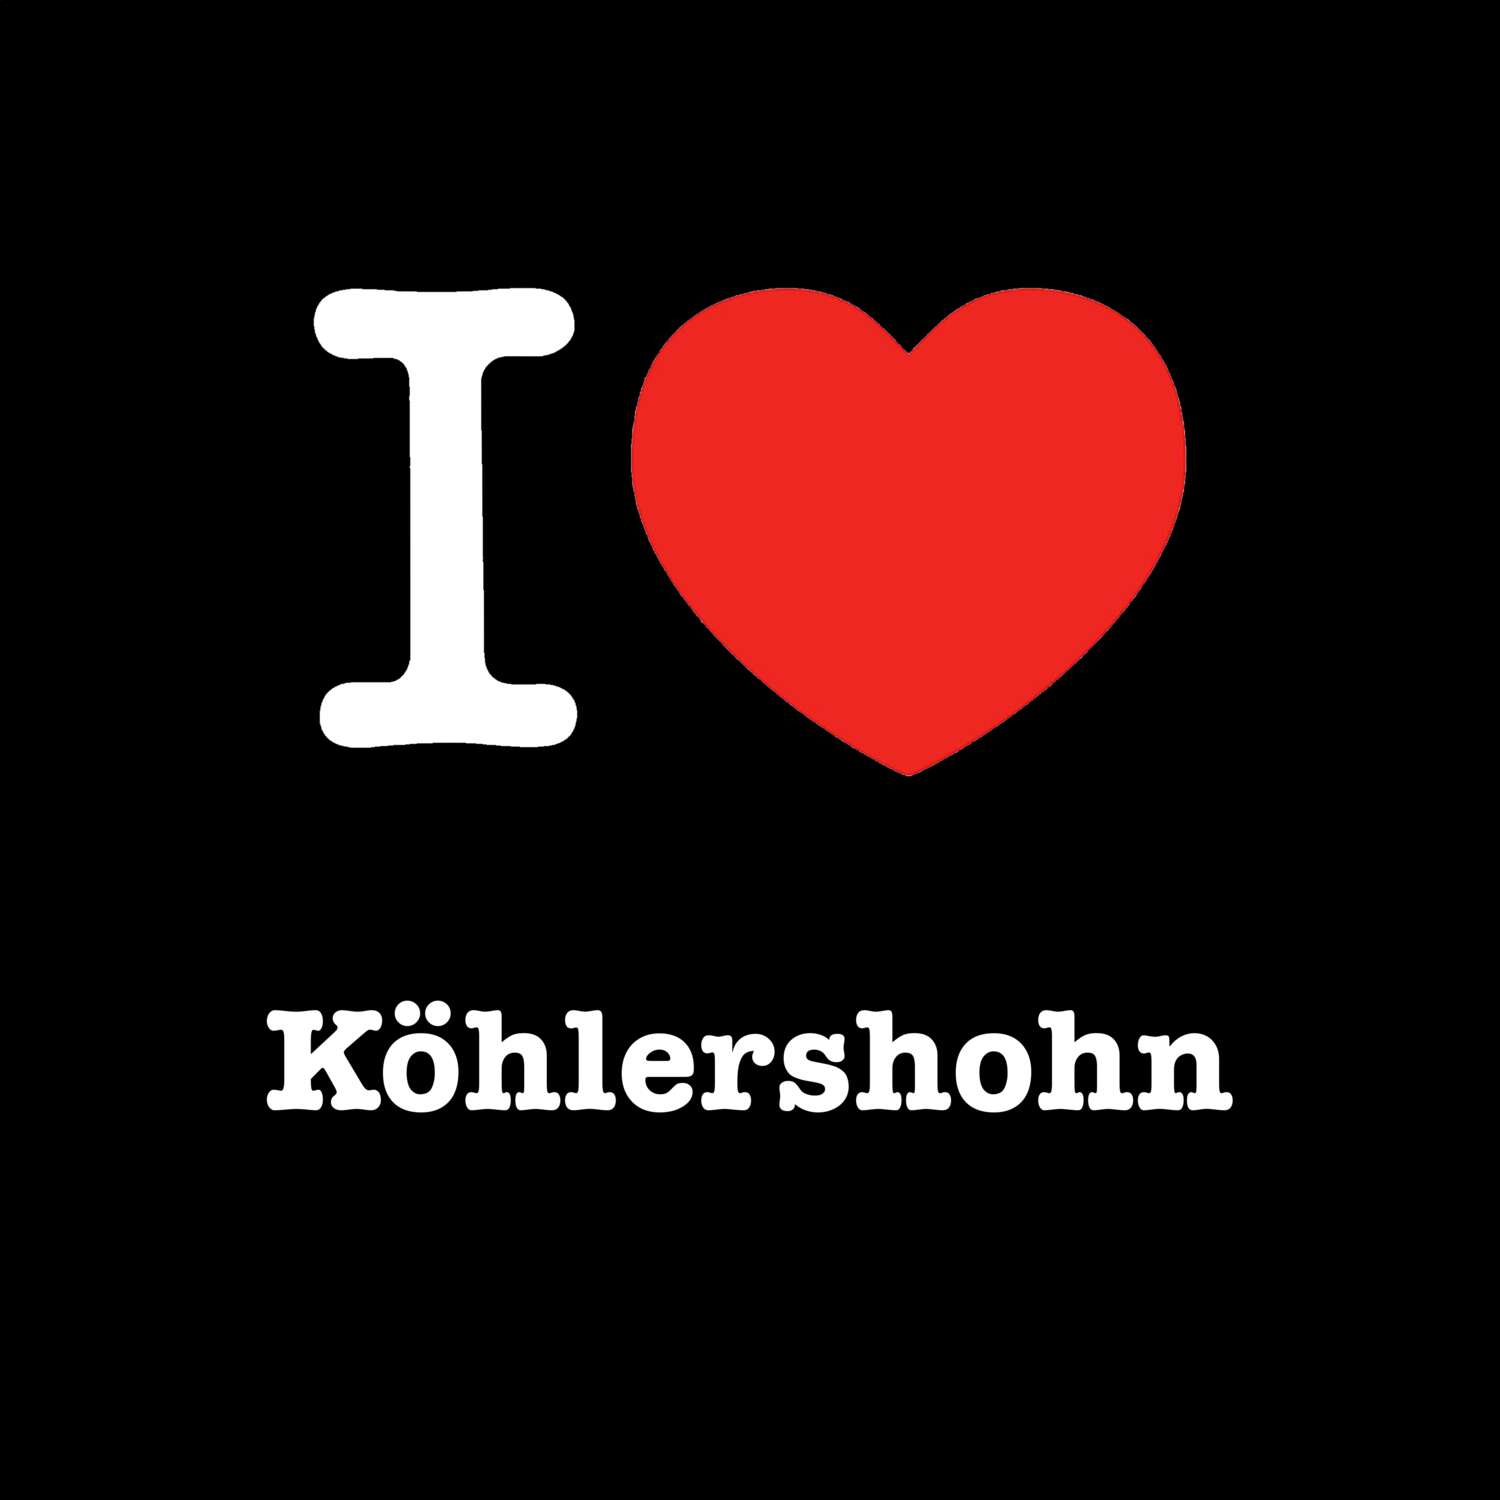 Köhlershohn T-Shirt »I love«